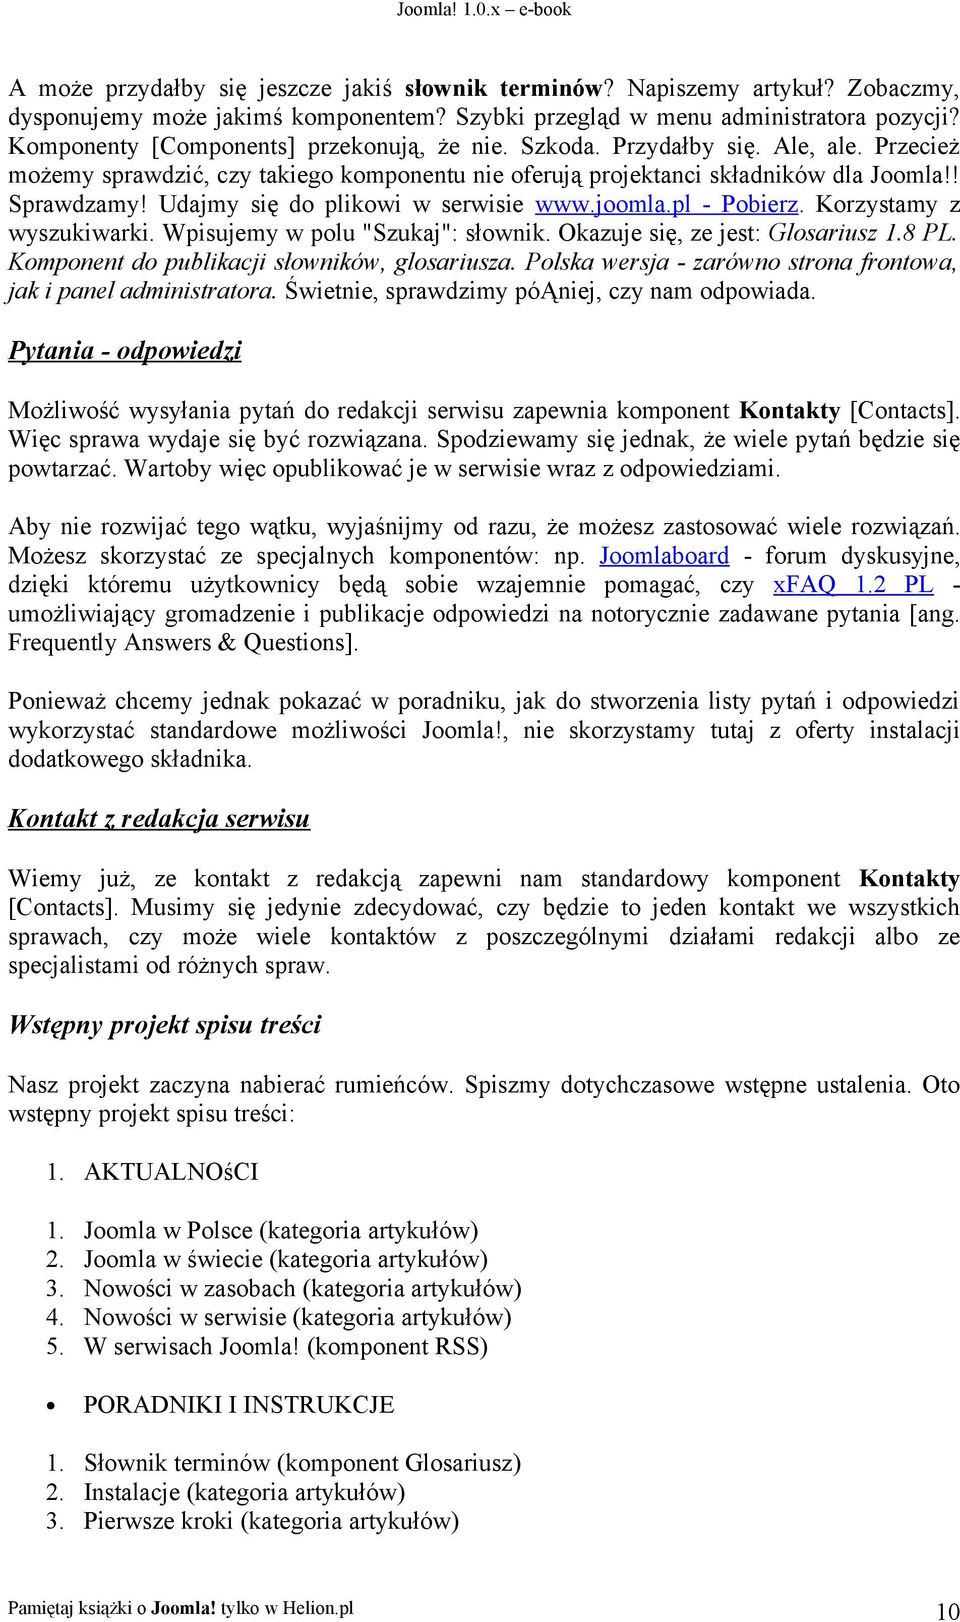 Udajmy się do plikowi w serwisie www.joomla.pl - Pobierz. Korzystamy z wyszukiwarki. Wpisujemy w polu "Szukaj": słownik. Okazuje się, ze jest: Glosariusz 1.8 PL.